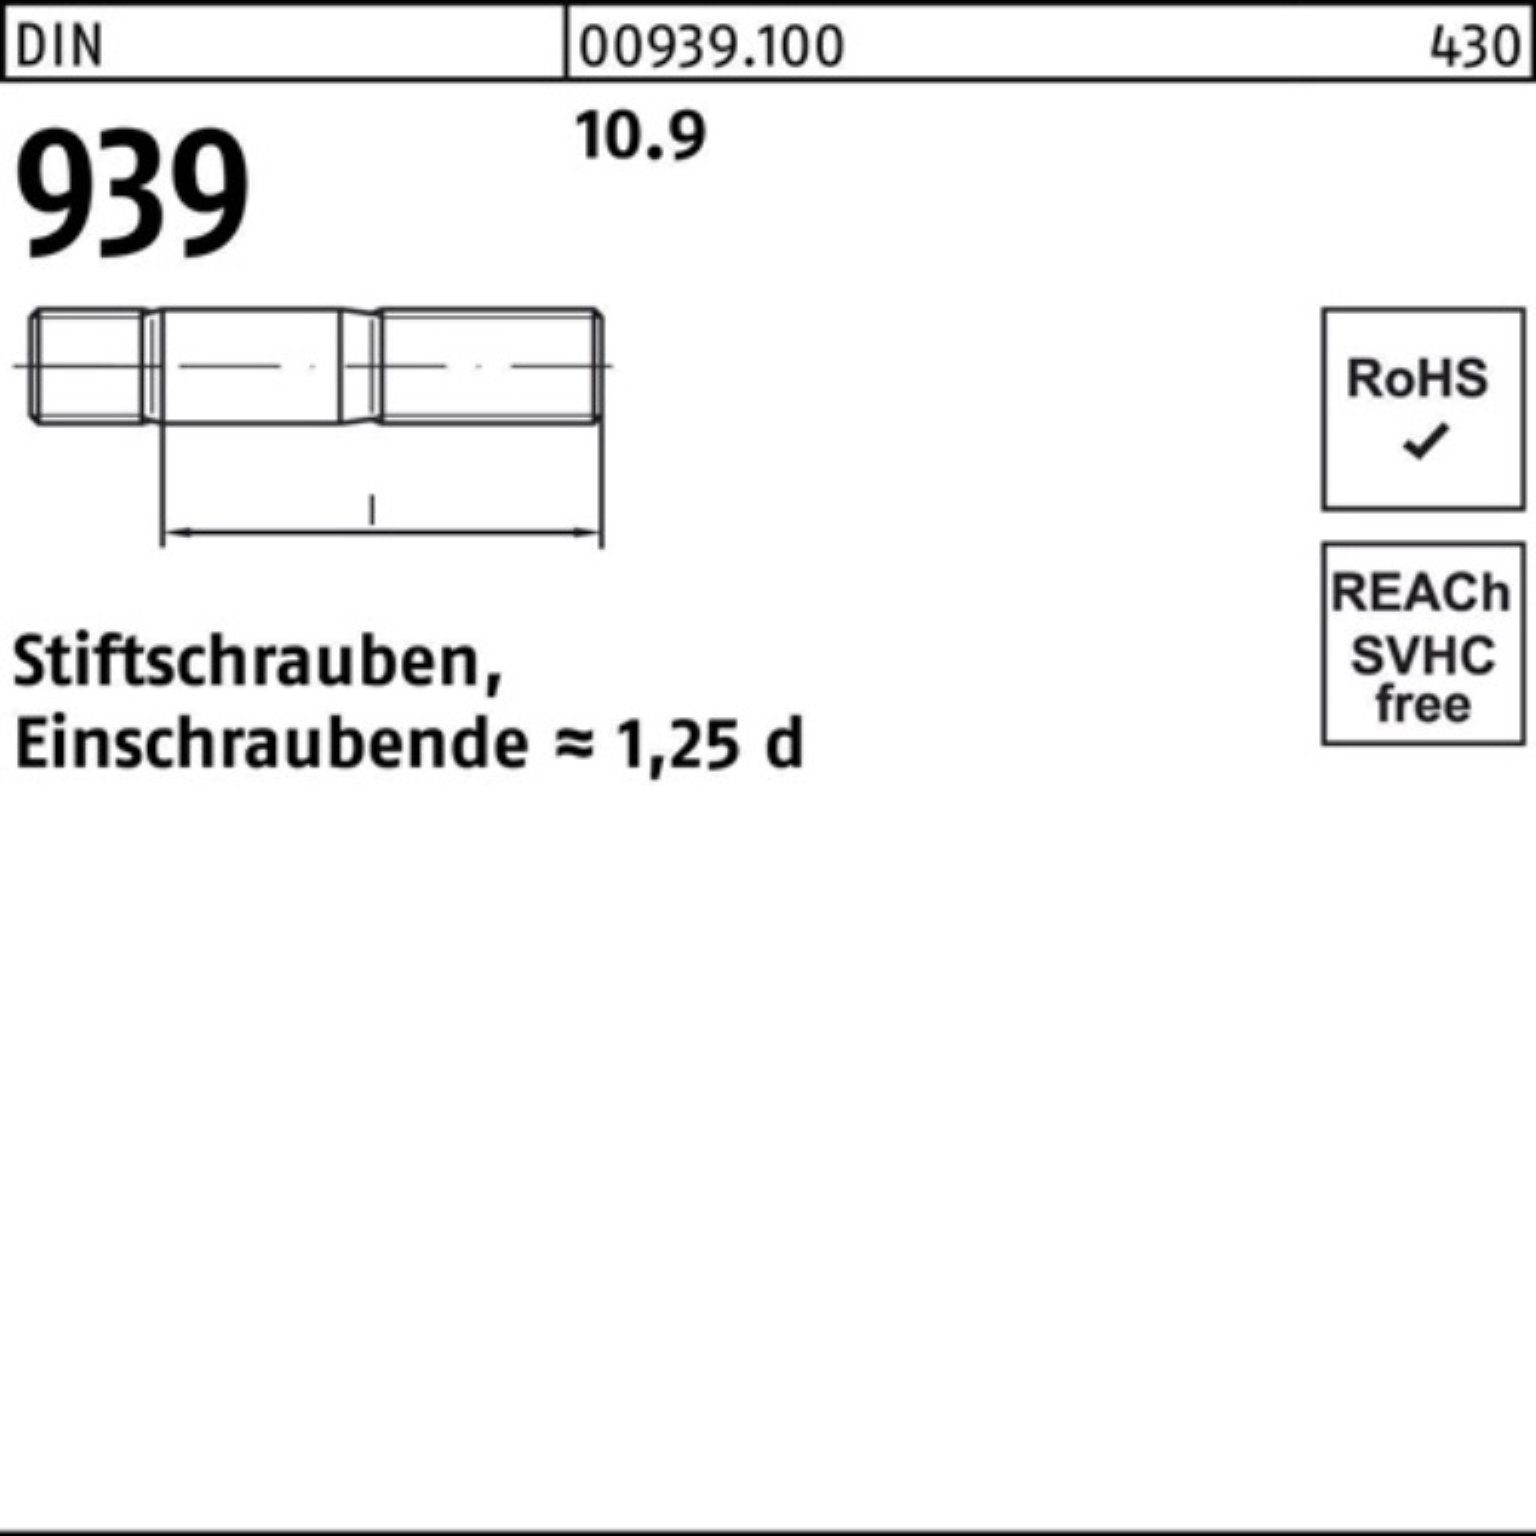 100er Pack Reyher Stiftschraube Stiftschraube Einschraubende=1,25d 10.9 939 10 DIN 180 M16x